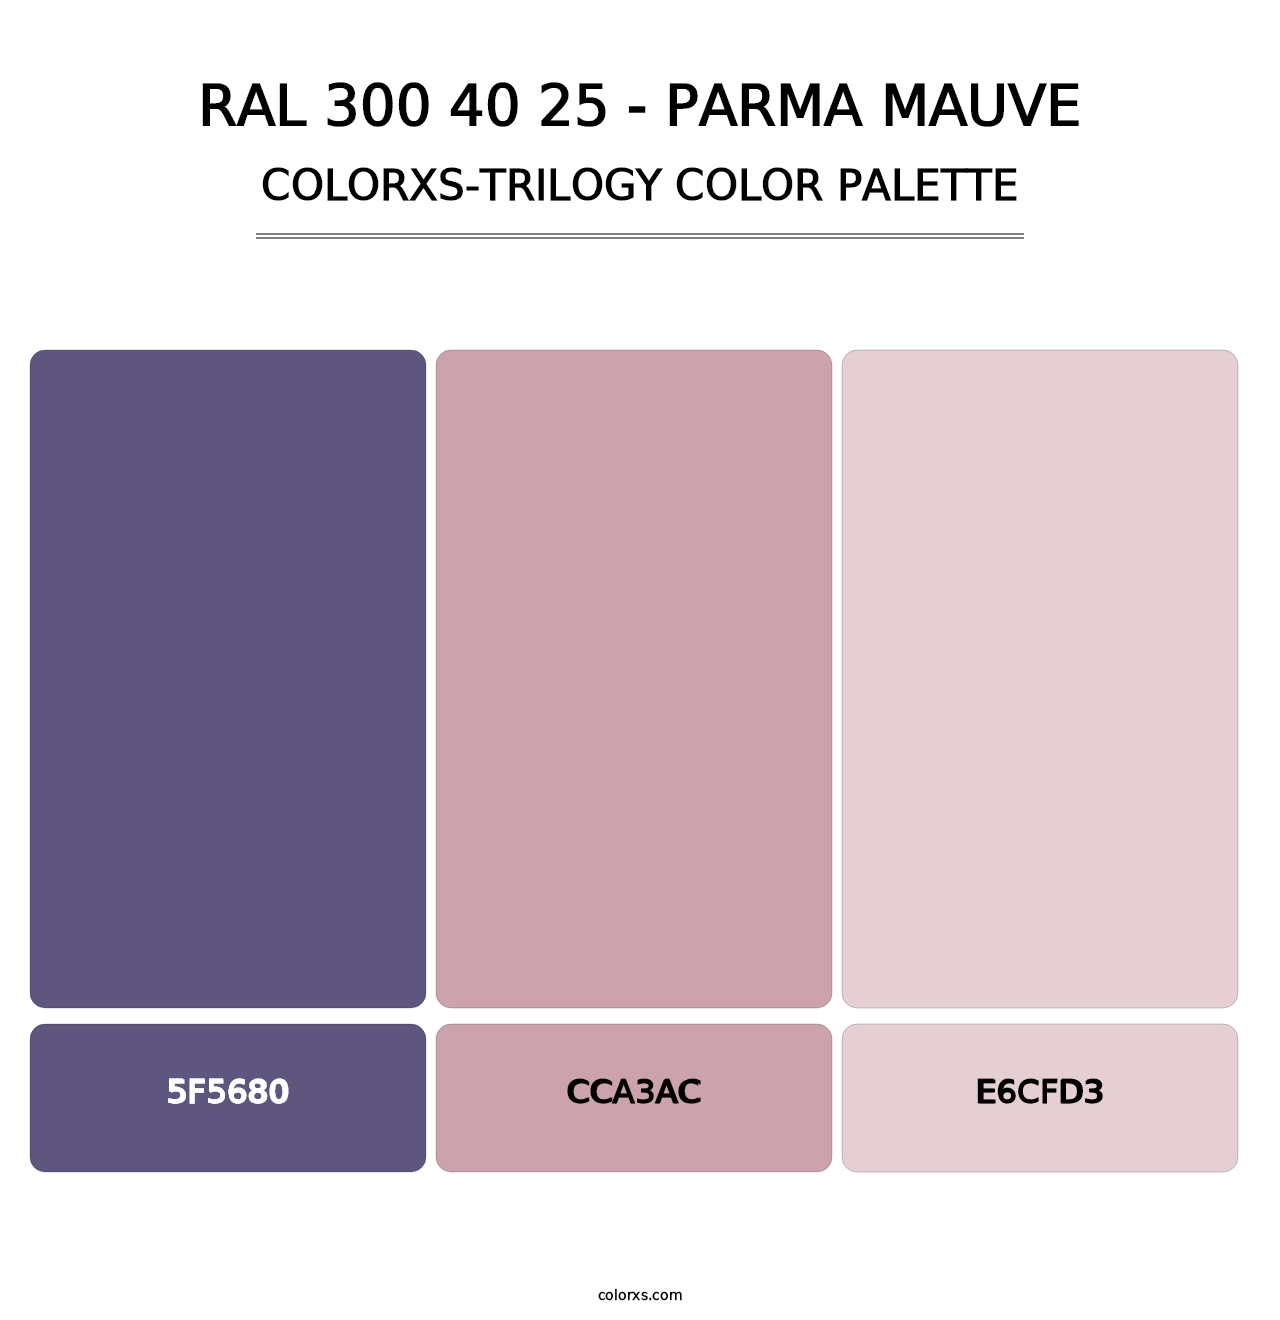 RAL 300 40 25 - Parma Mauve - Colorxs Trilogy Palette